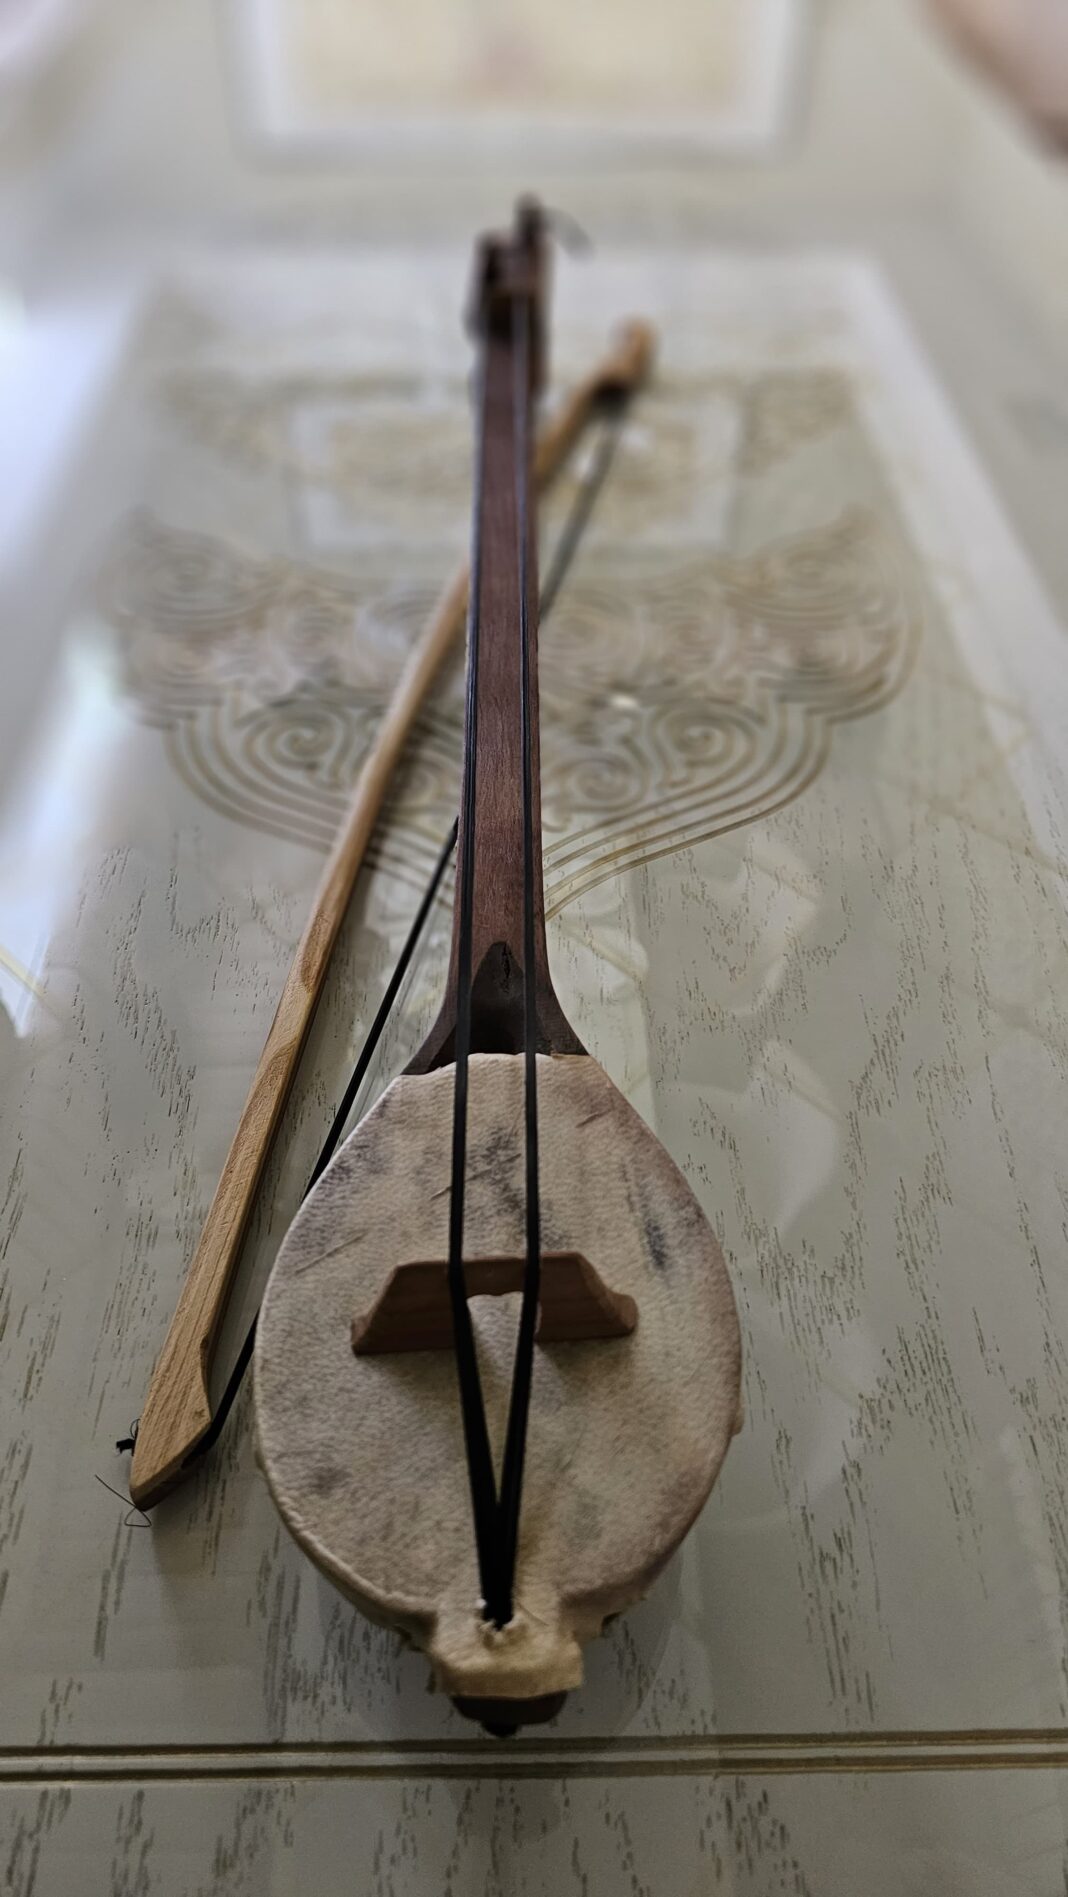 Димашу Кудайбергену вручена научная копия древнейшего кобыза - символа музыкального наследия Тюркского мира